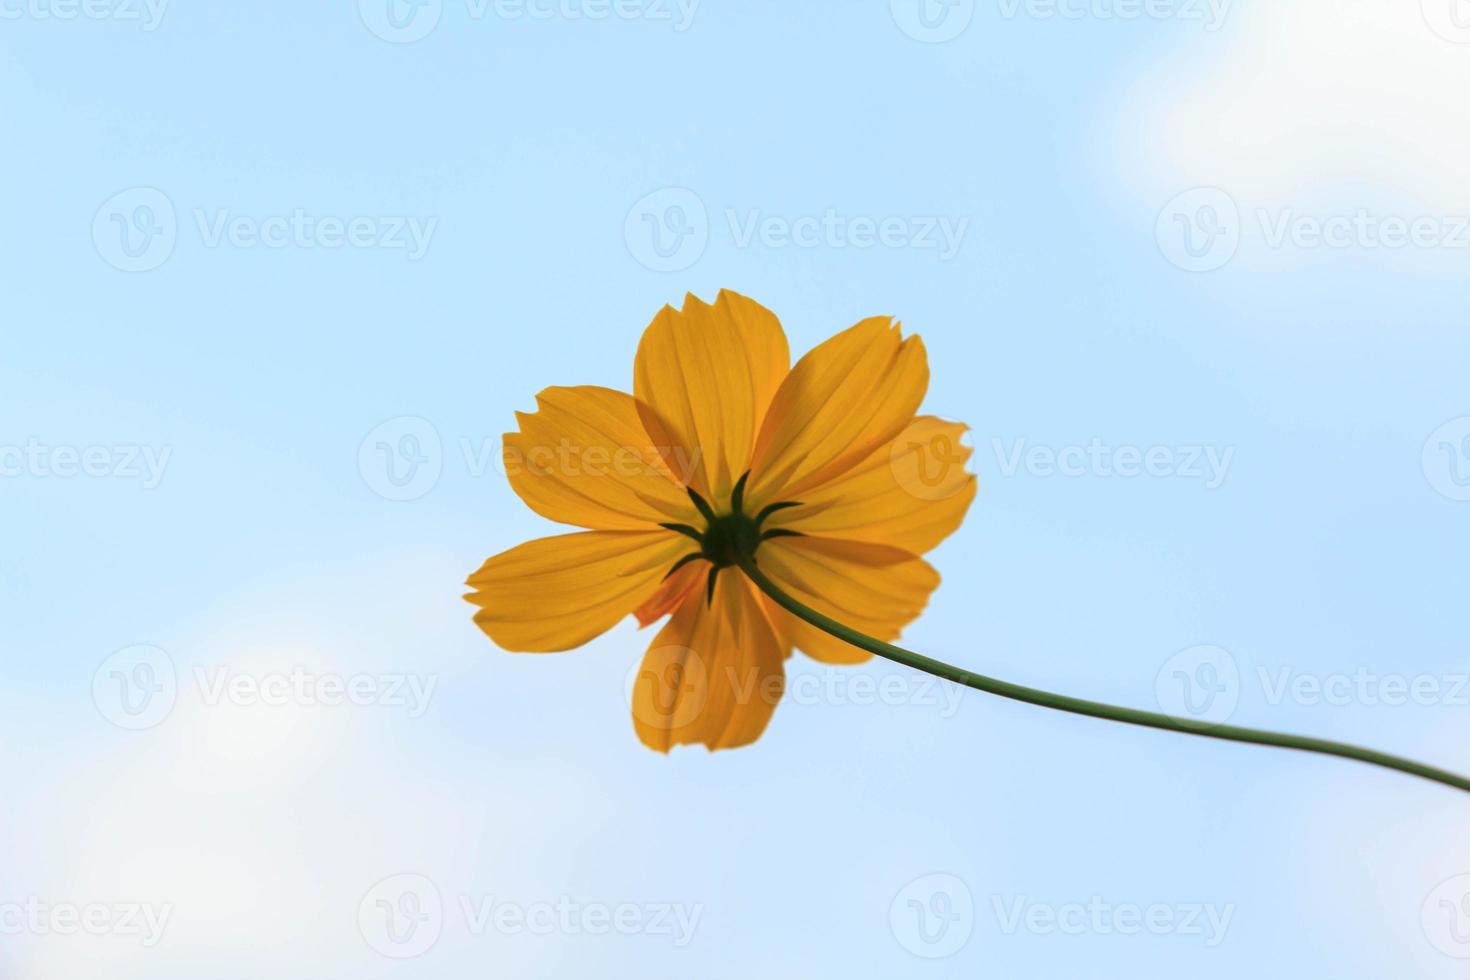 naturligt vackra gula kosmos eller starburst blommor som blommar i solen en mycket varm dag. kreativ natur mot blå himmel bakgrund foto